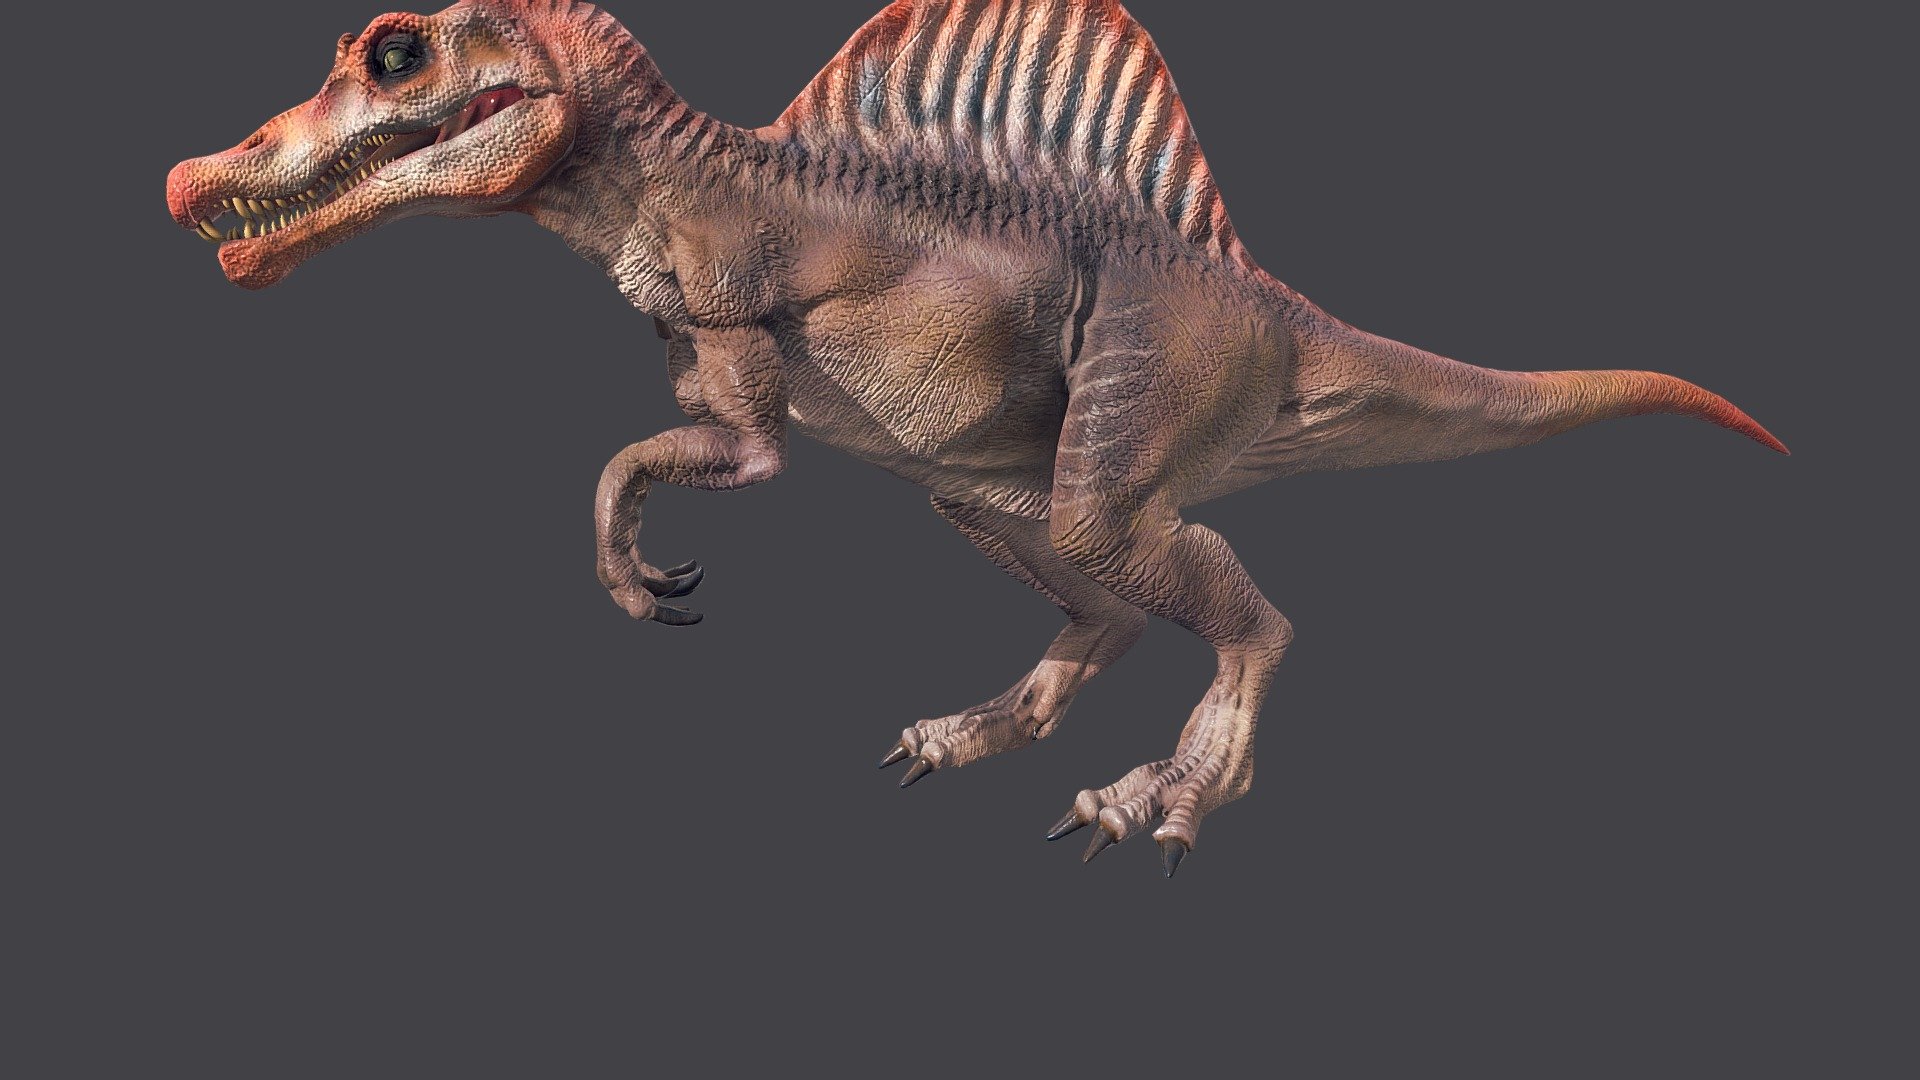 jurassic park spinosaurus roar